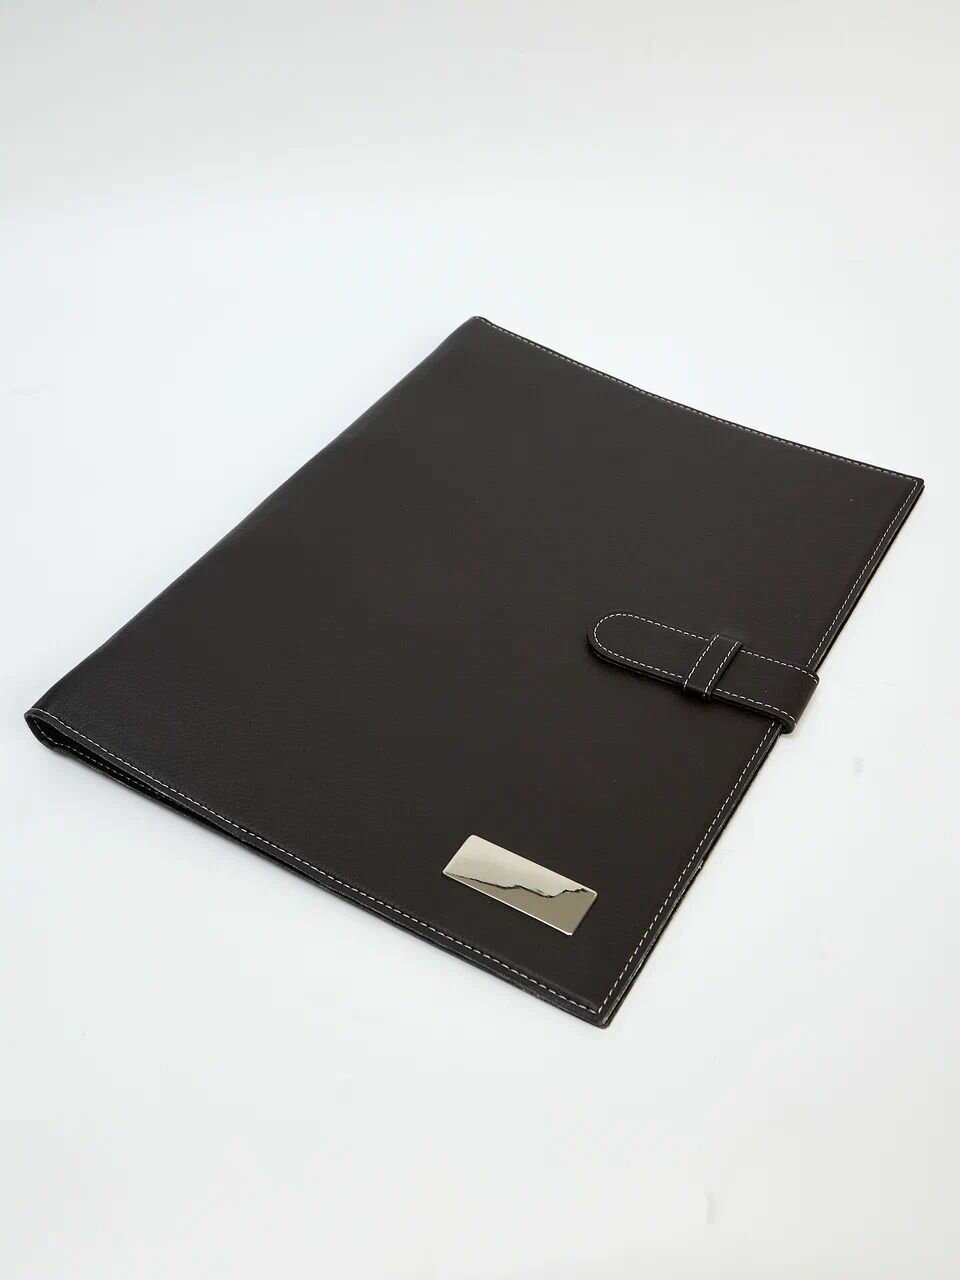 Папка органайзер для хранения документов формата А4 Черная на ремешке